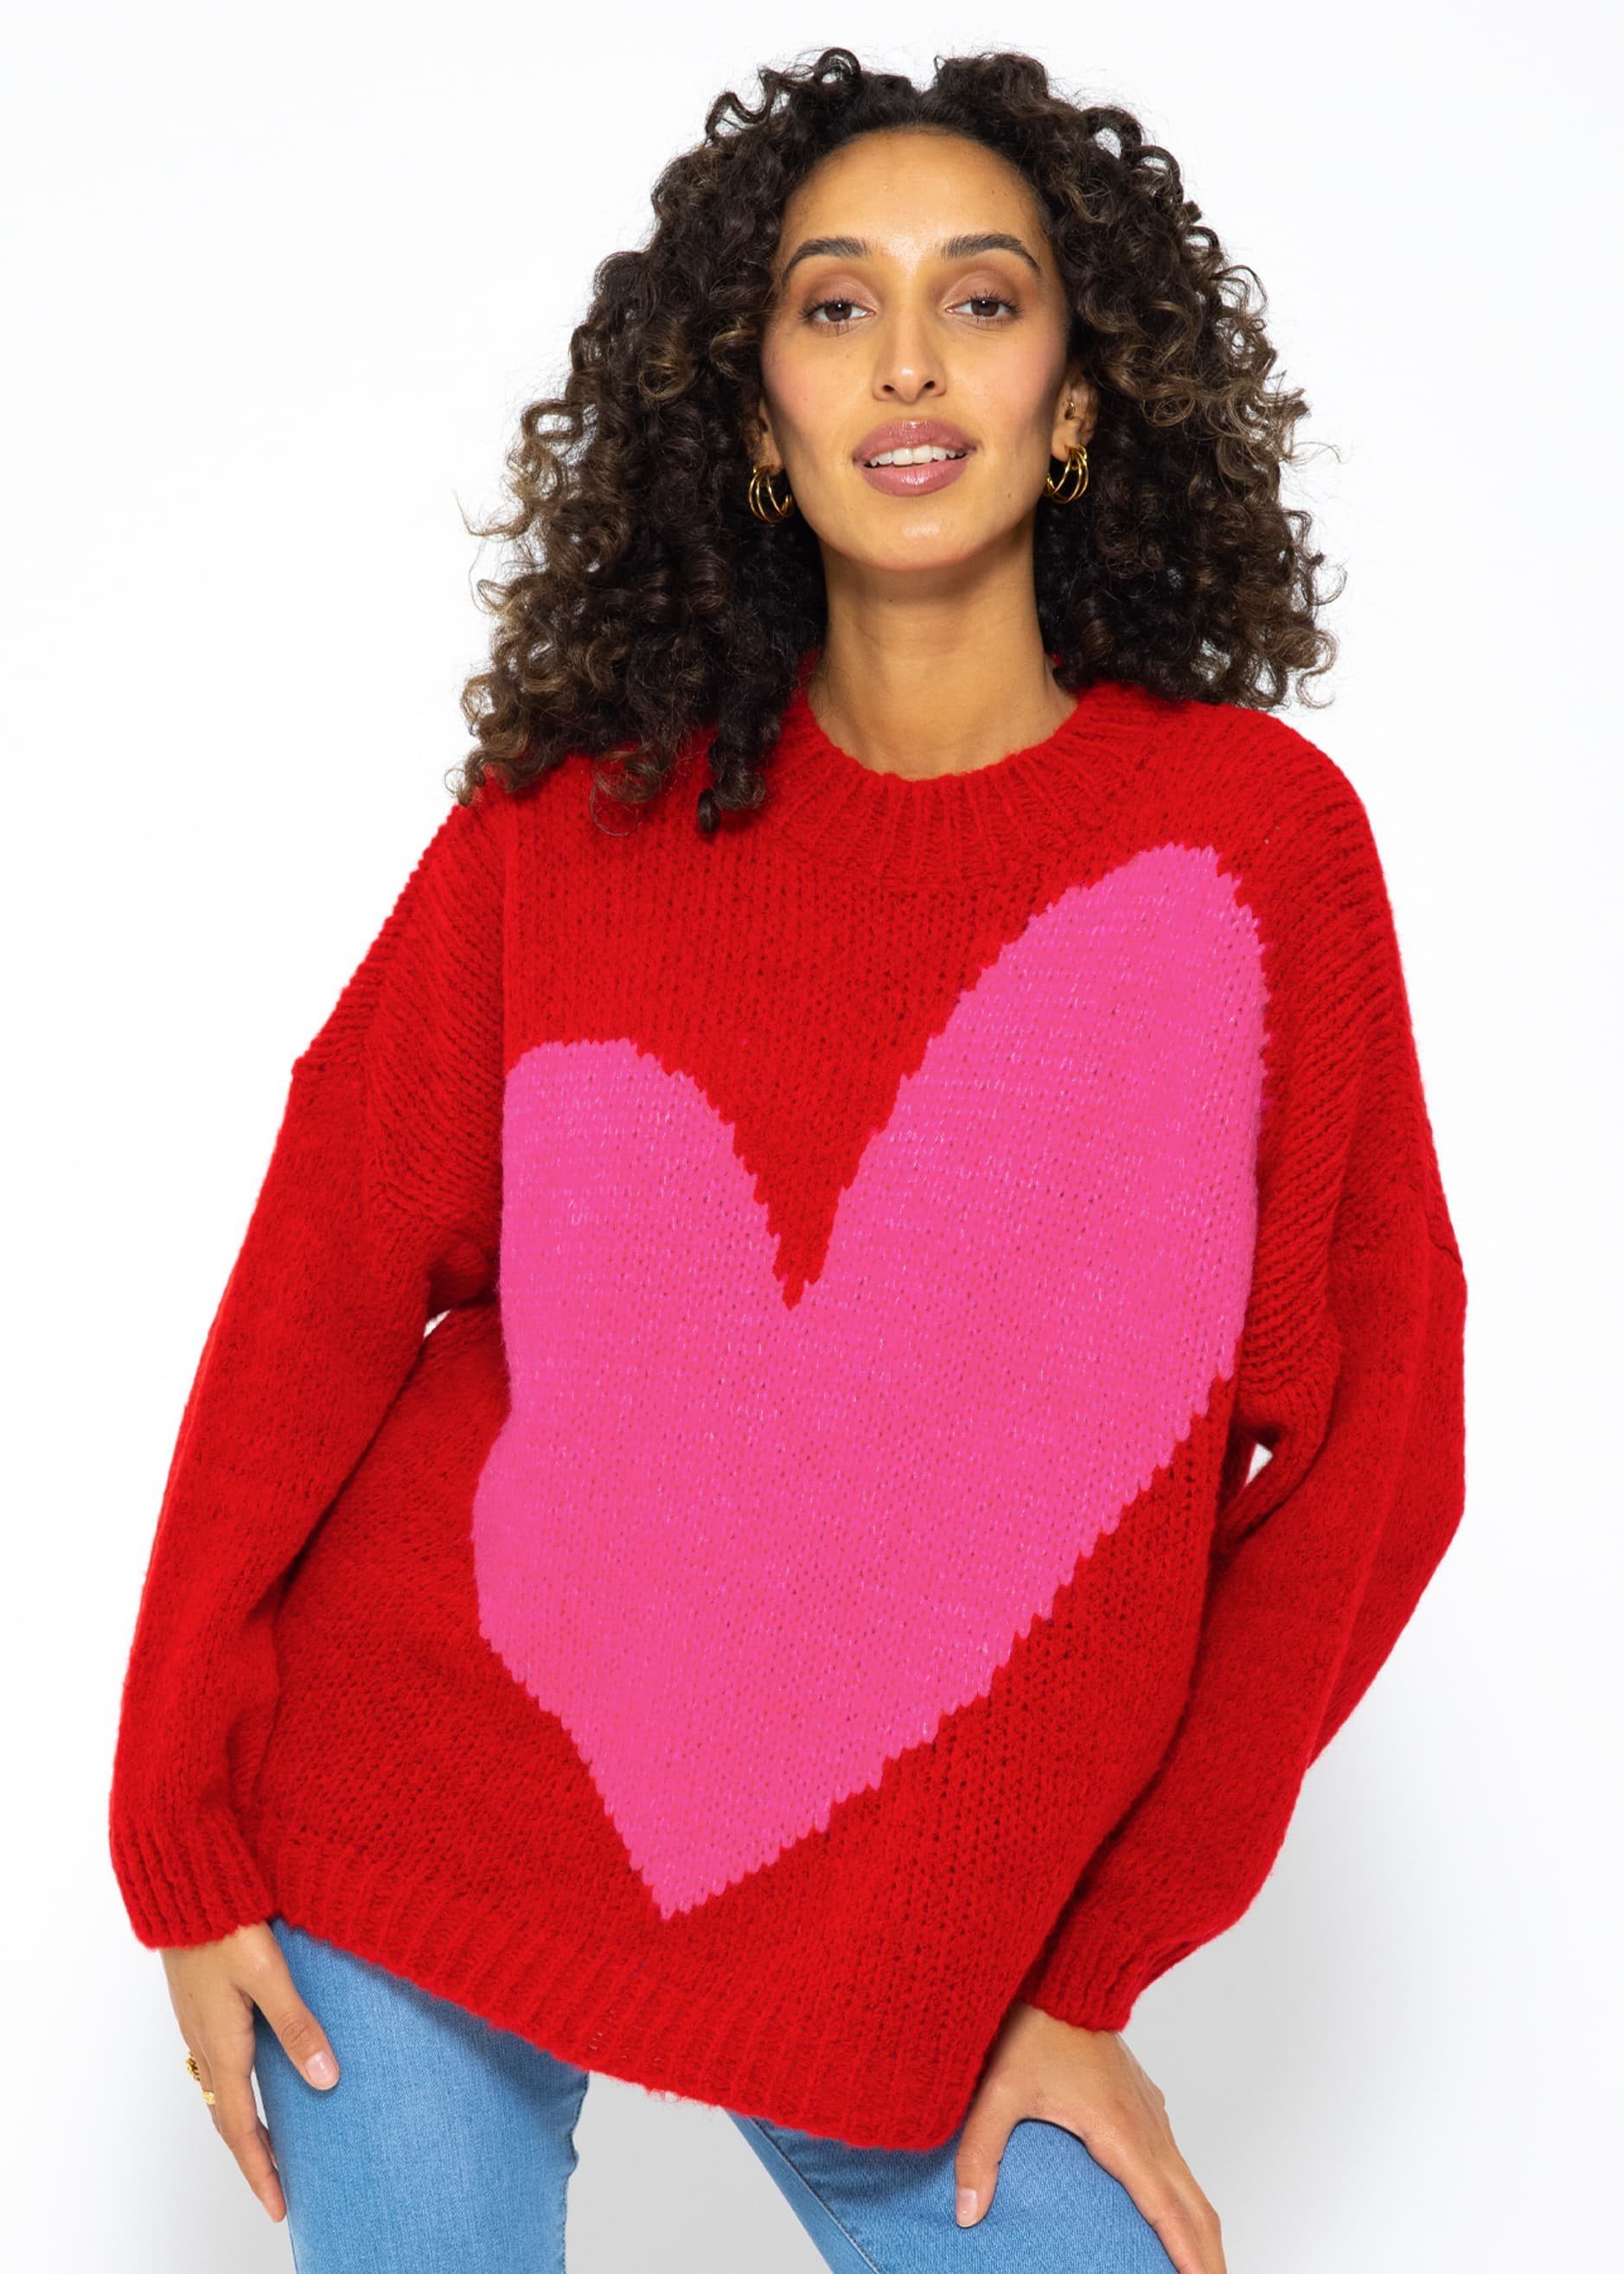 SASSYCLASSY Strickpullover Oversize Пуловери mit Herzmotiv Flauschigeer Grobstrick-Pullover mit Herzmotiv - made in Italy